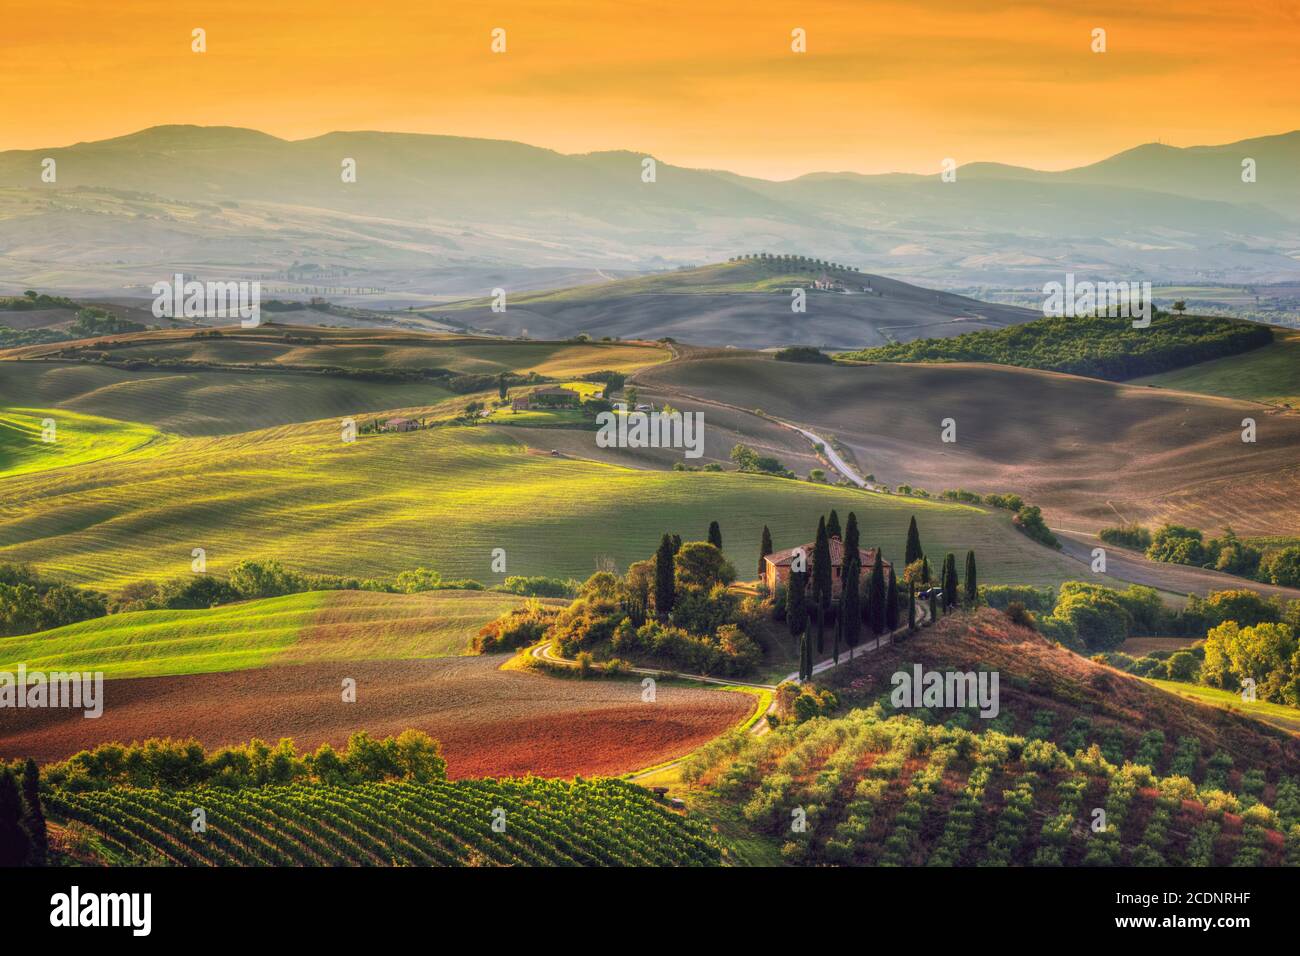 Tuscany landscape at sunrise. Tuscan farm house, vineyard, hills. Stock Photo